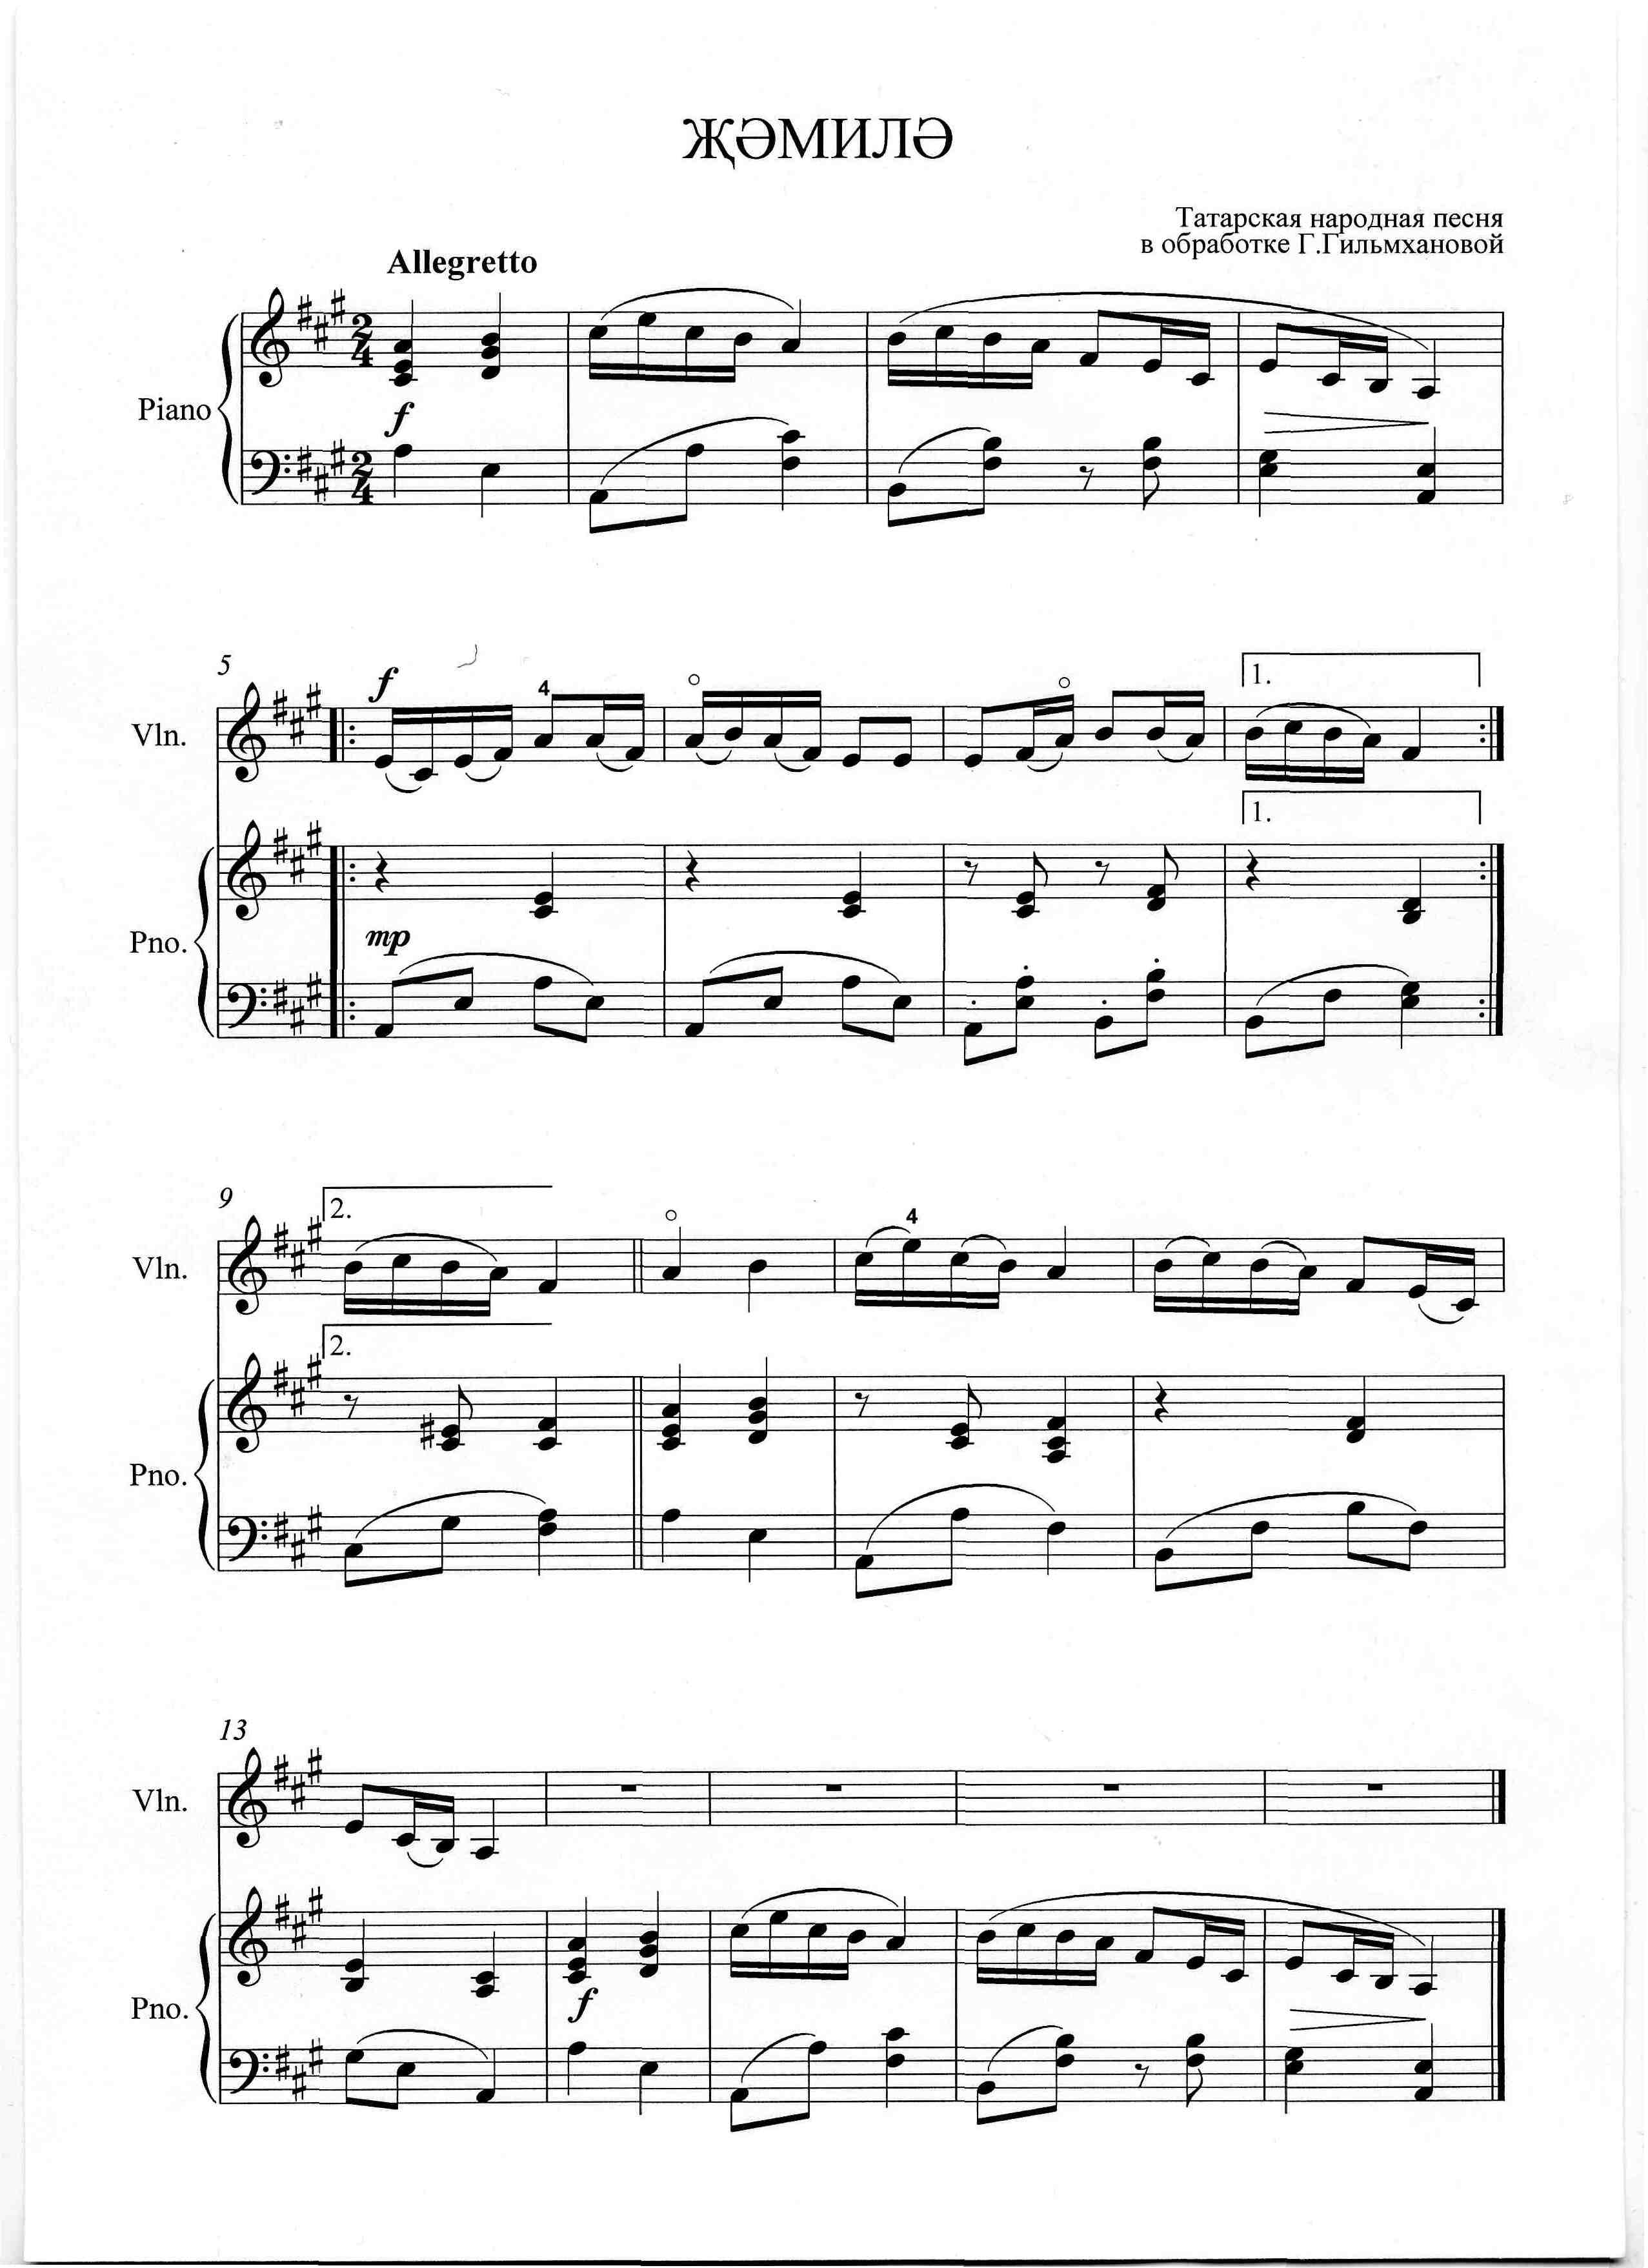 Сборник для фортепиано «Обработки татарских народных мелодий»